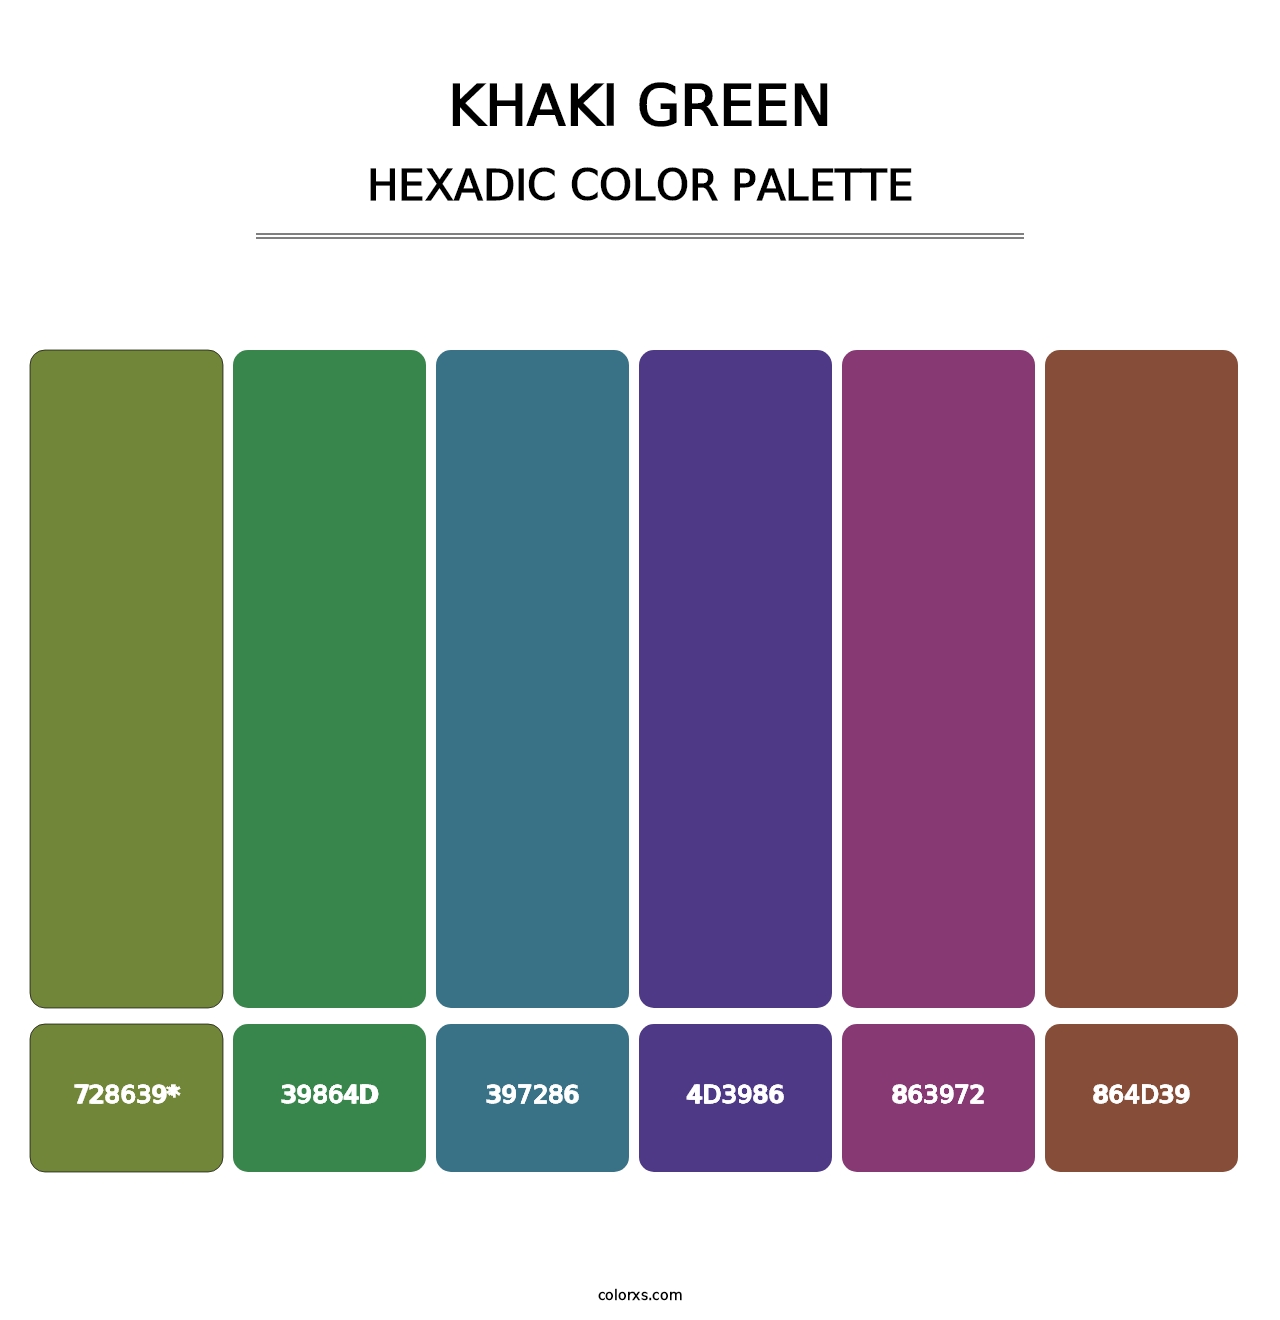 Khaki Green - Hexadic Color Palette